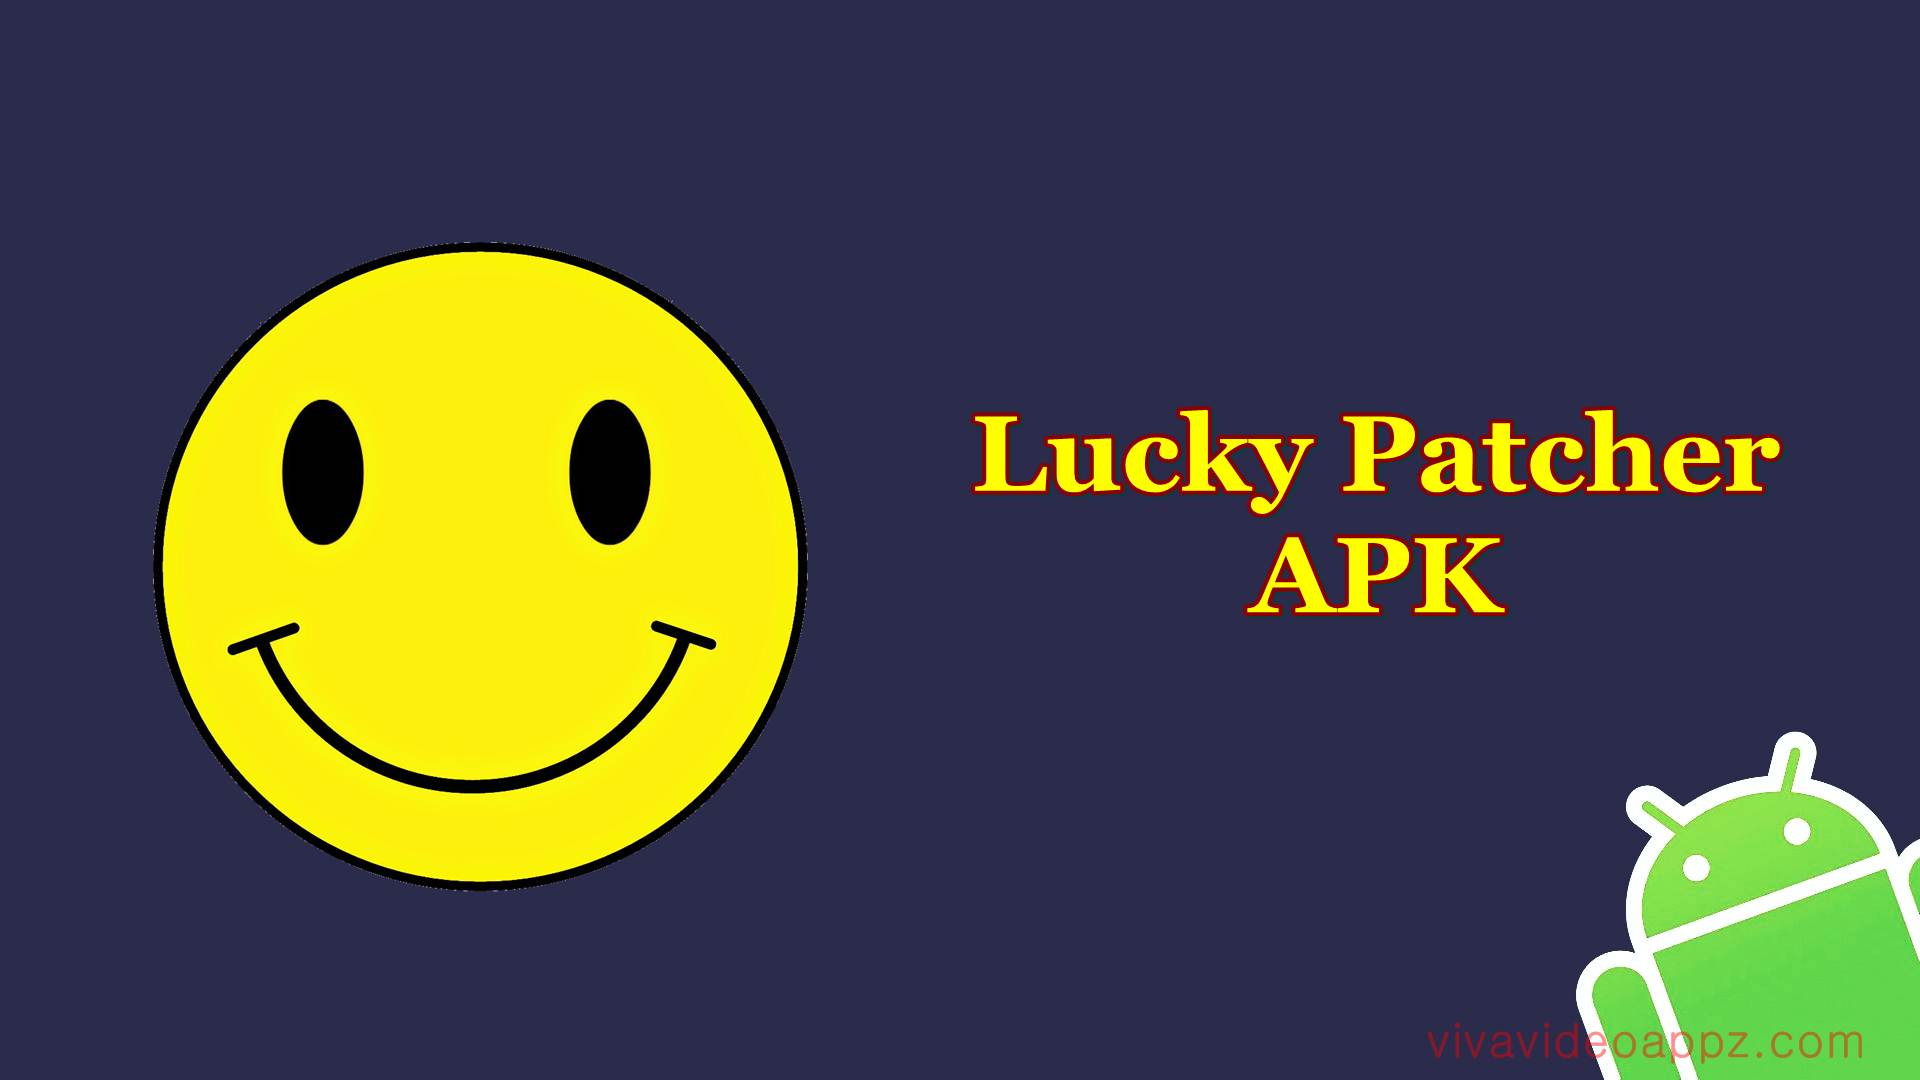 Apk lucky patcher 2019